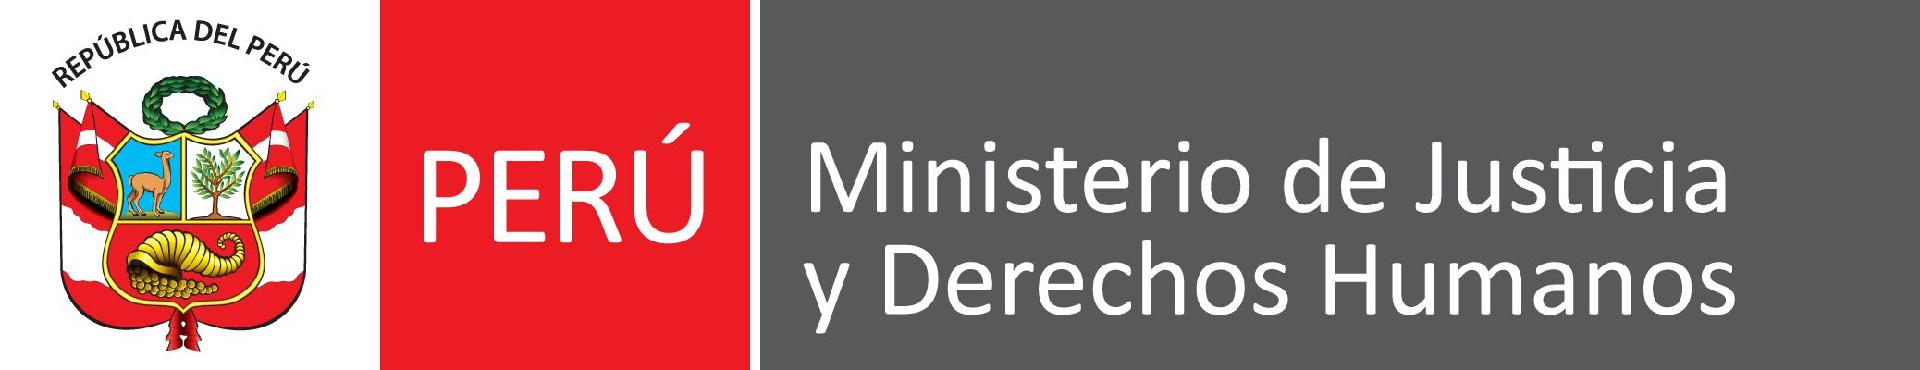 Ministerio de Justicia y Derechos Humanos del Perú